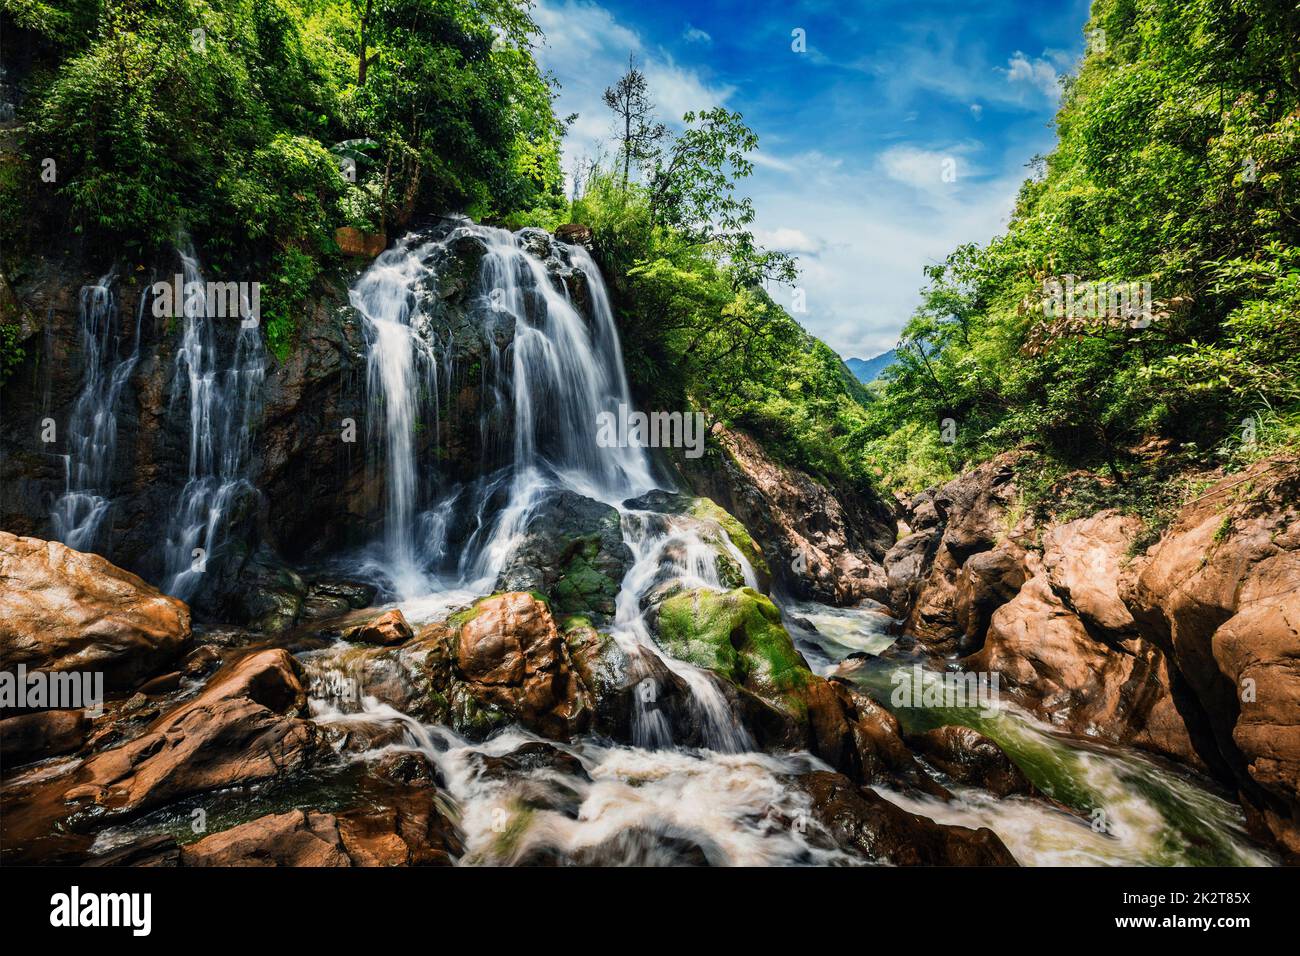 Cat-Cat waterfall, Vietnam Stock Photo